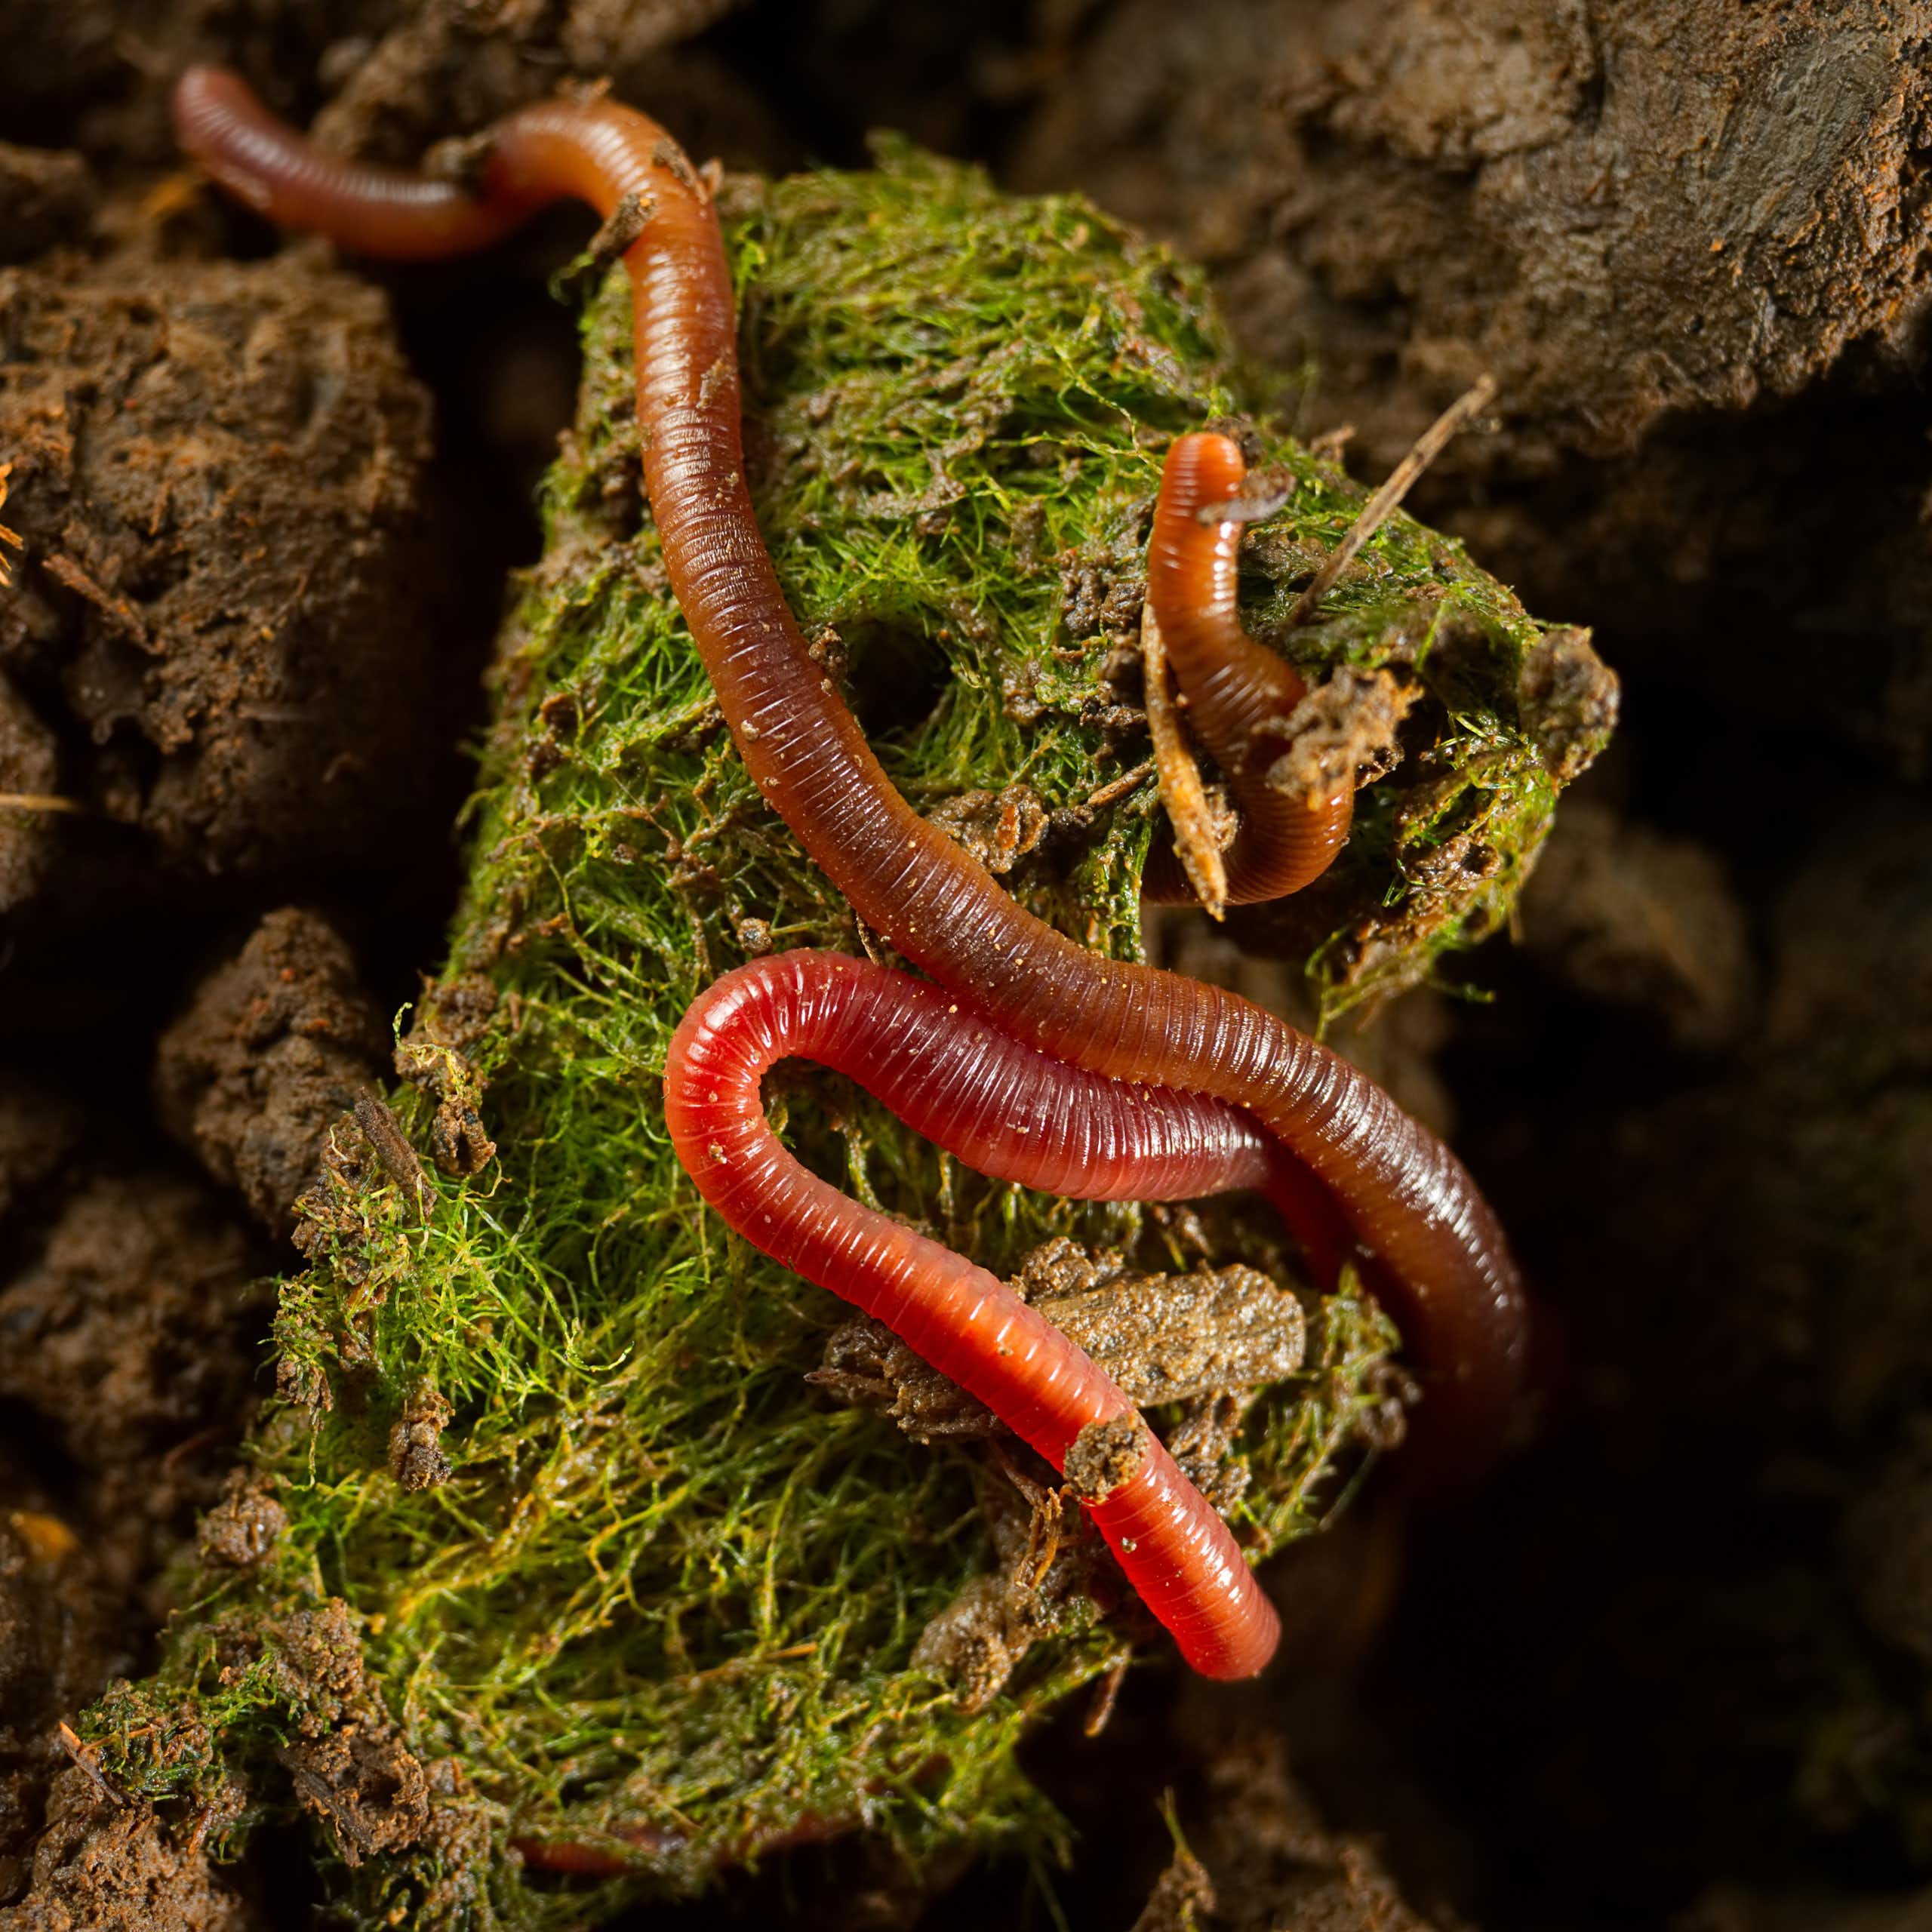 Detalhe de uma minhoca em solo fértil